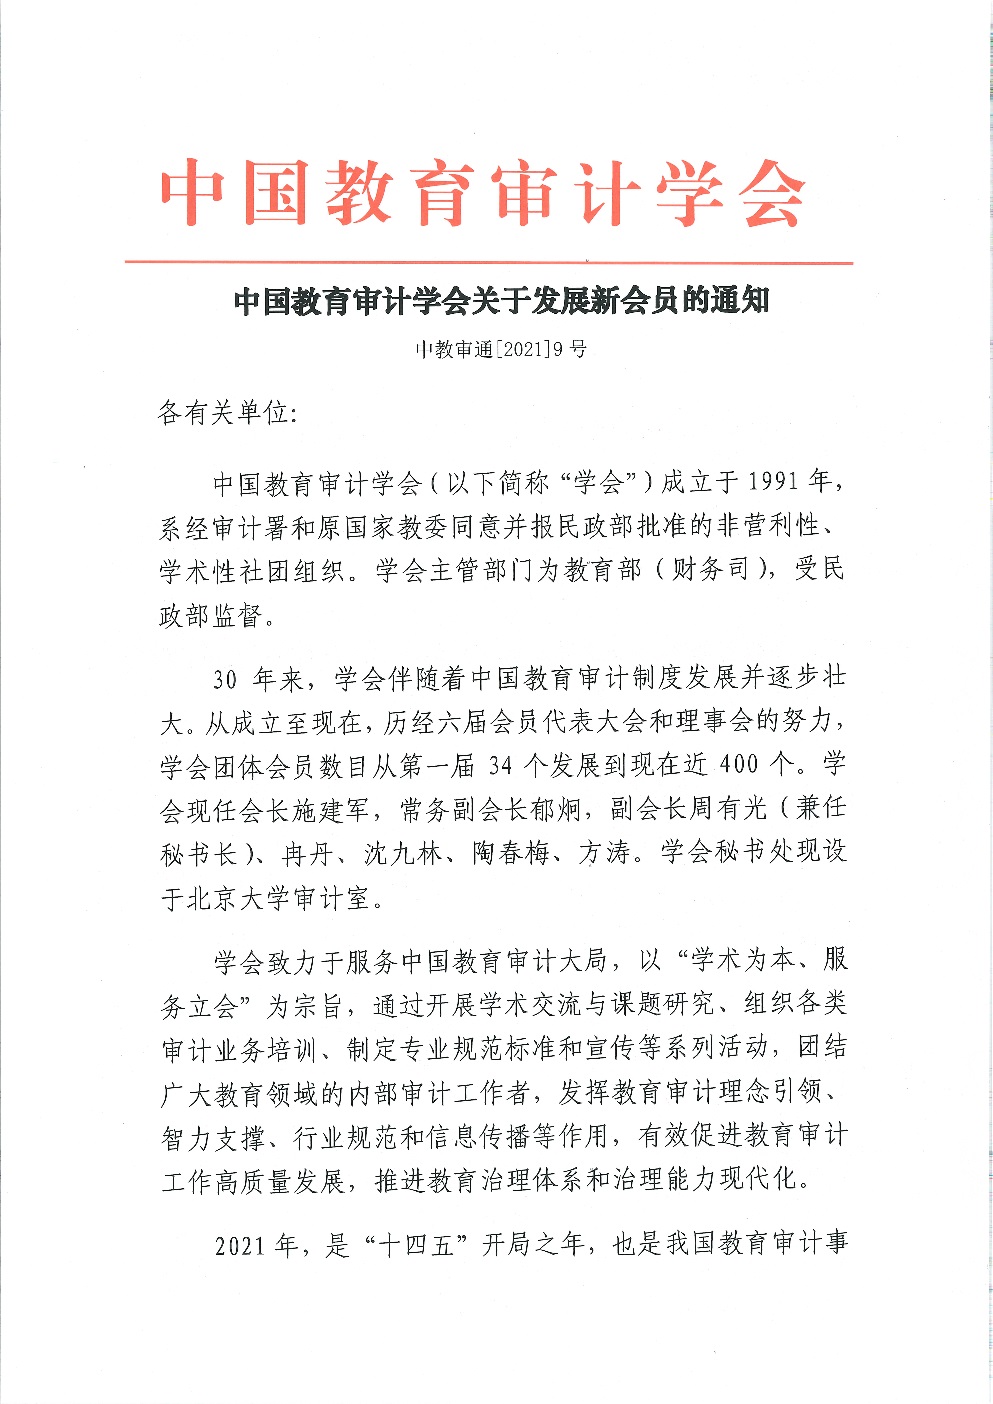 中教审通[2021]9号—中国教育审计学会关于发展新会员的通知_页面_1.jpg